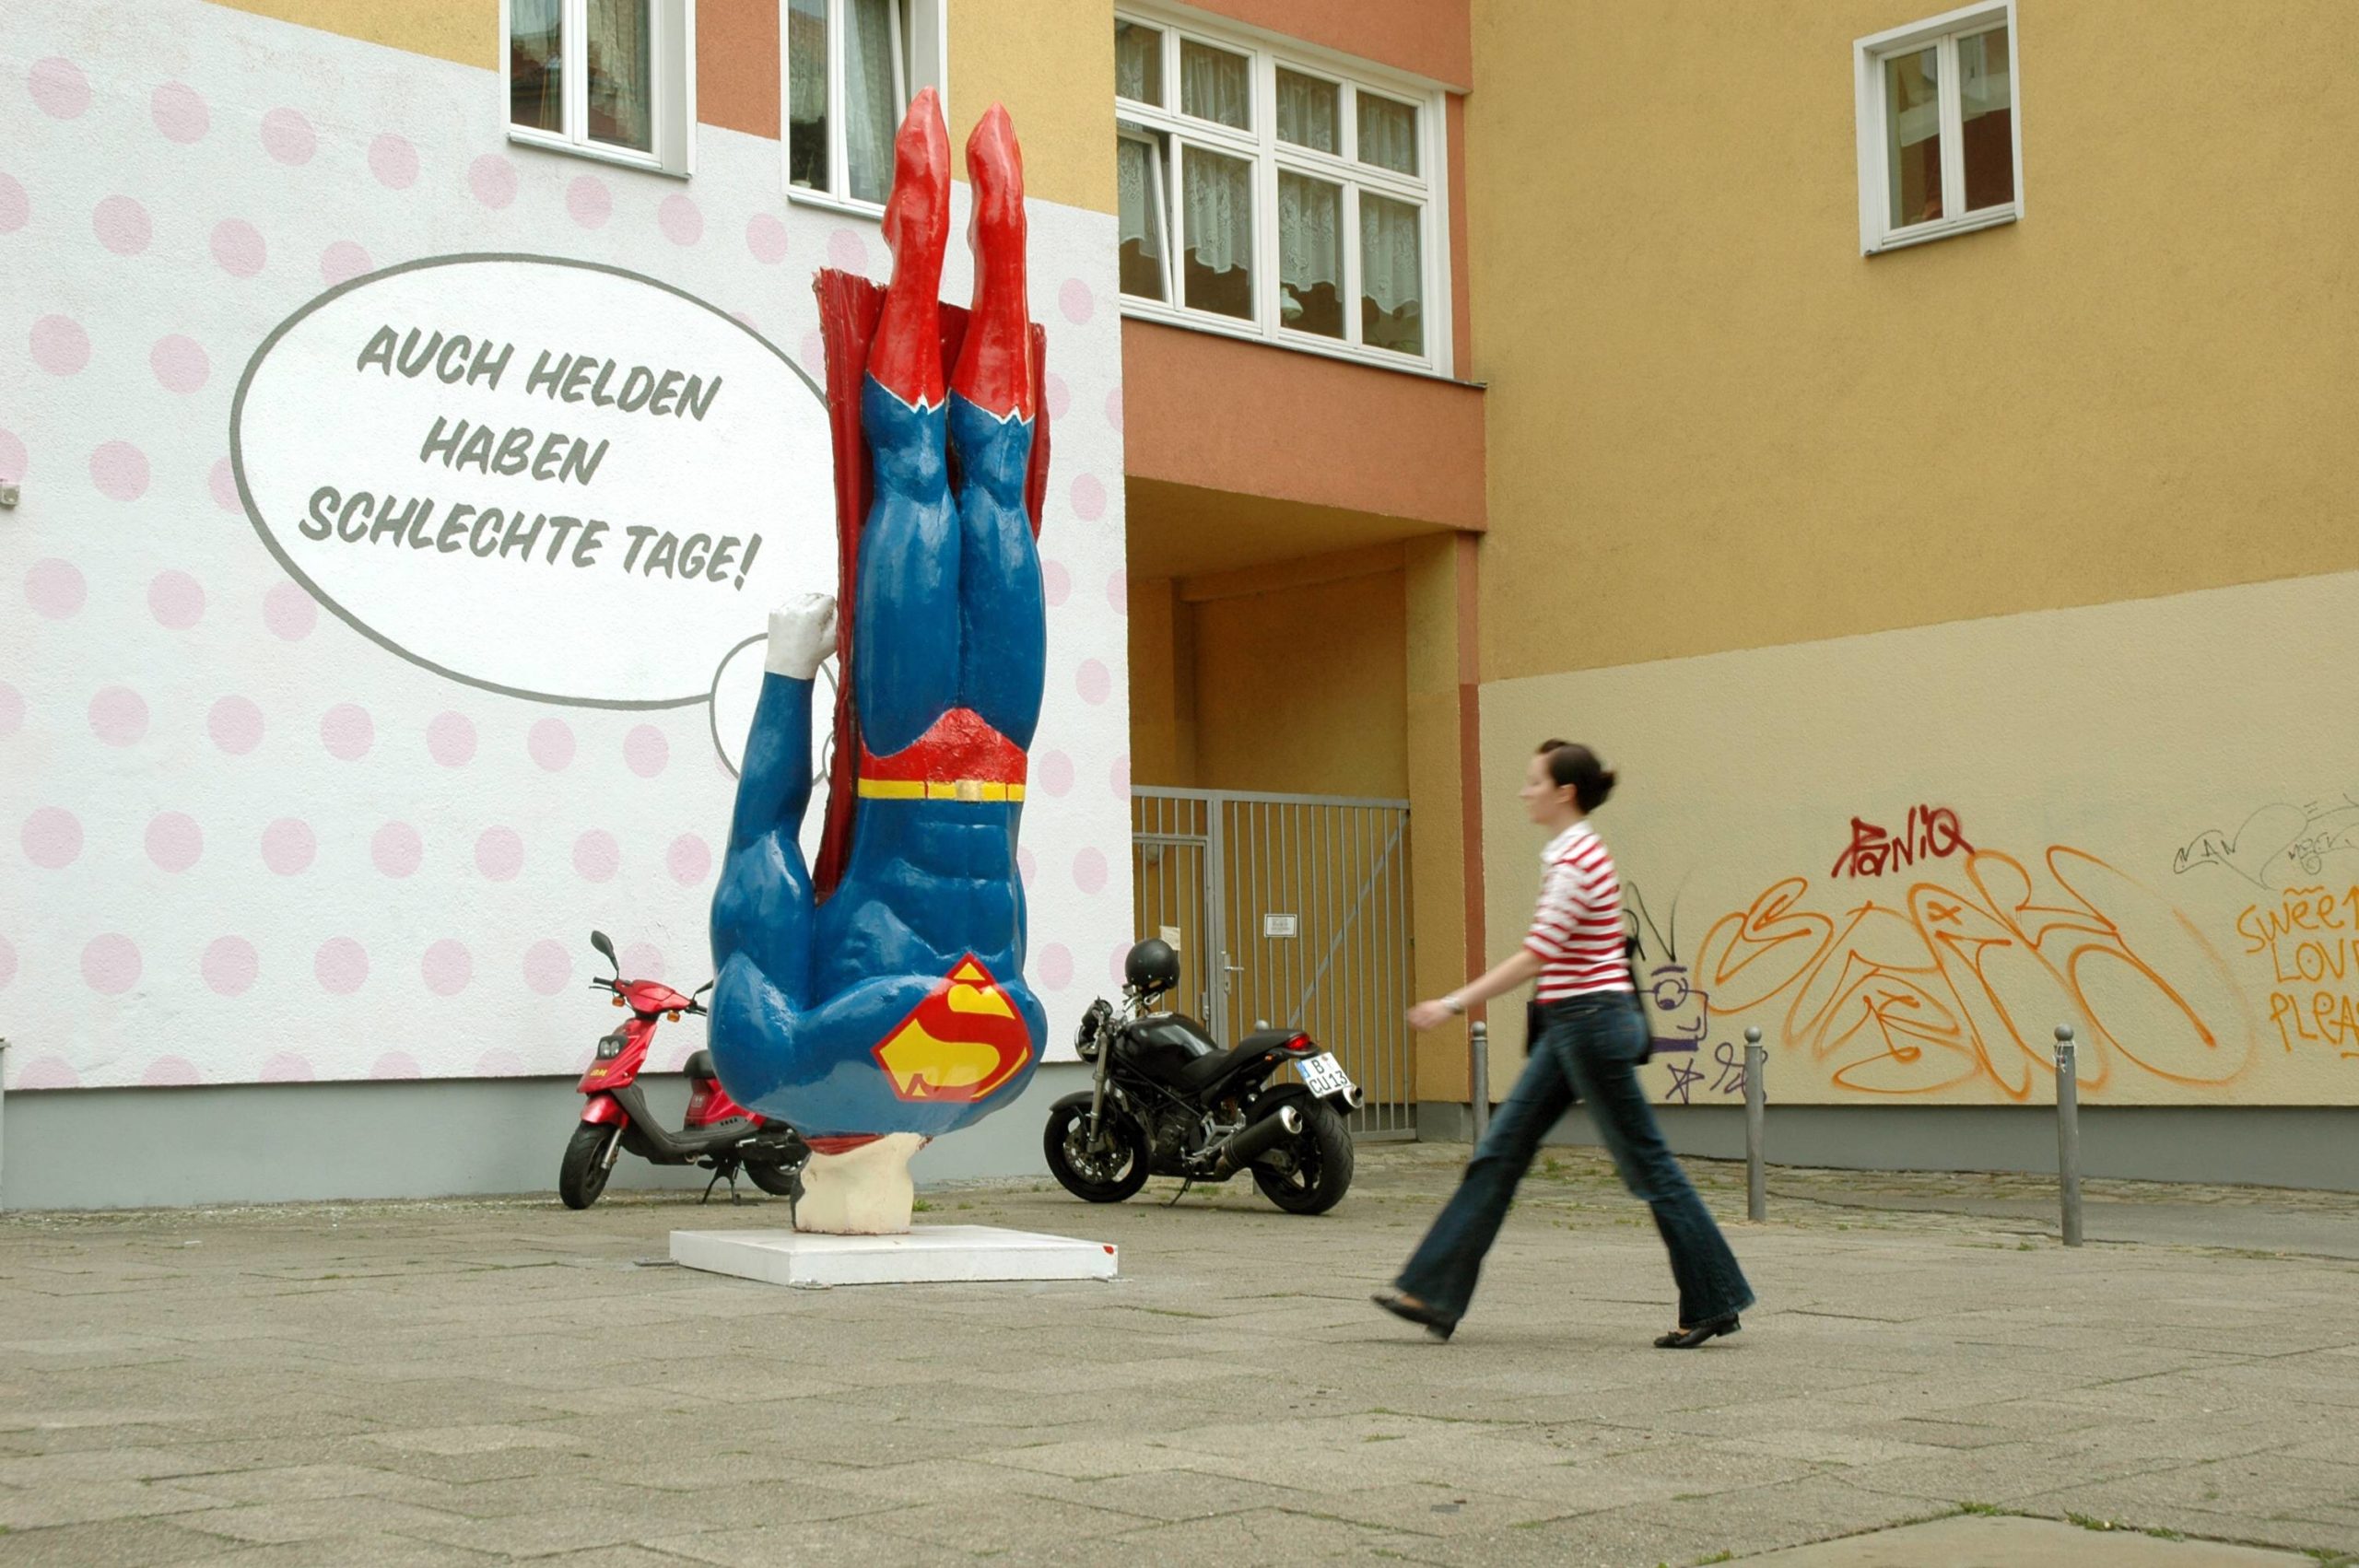 Superhelden in Berlin: Auch Helden haben schlechte Tage – Abgestürzter Superman. Kunstprojekt von Marcus Wittmers in der Kastanienallee, 2006. Foto: Imago/Steinach